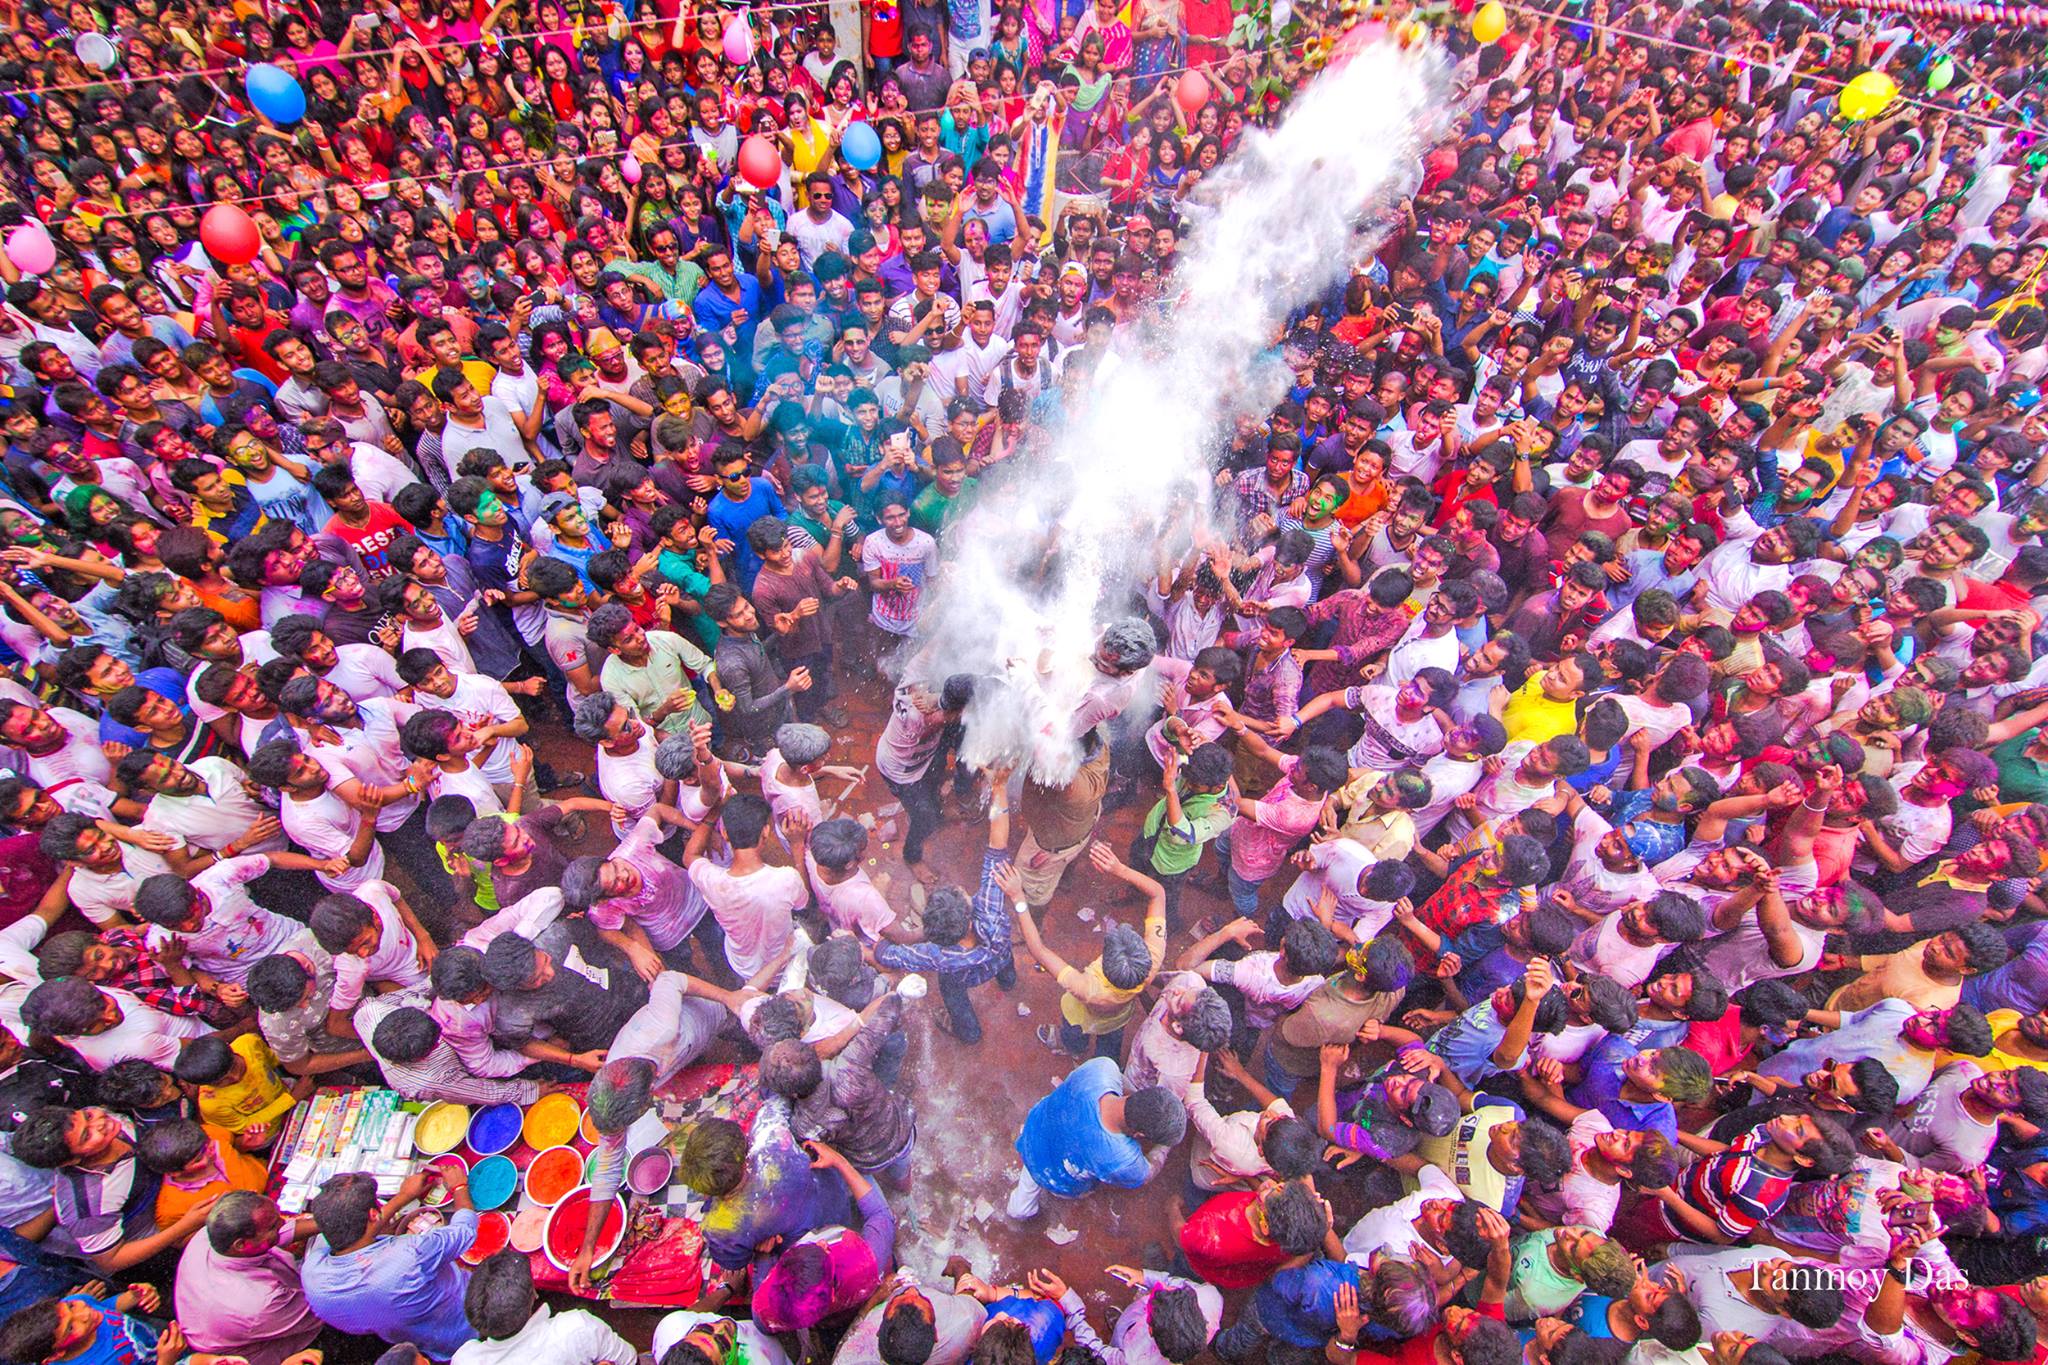 Hindu spring festival Tanmoy Das Photo